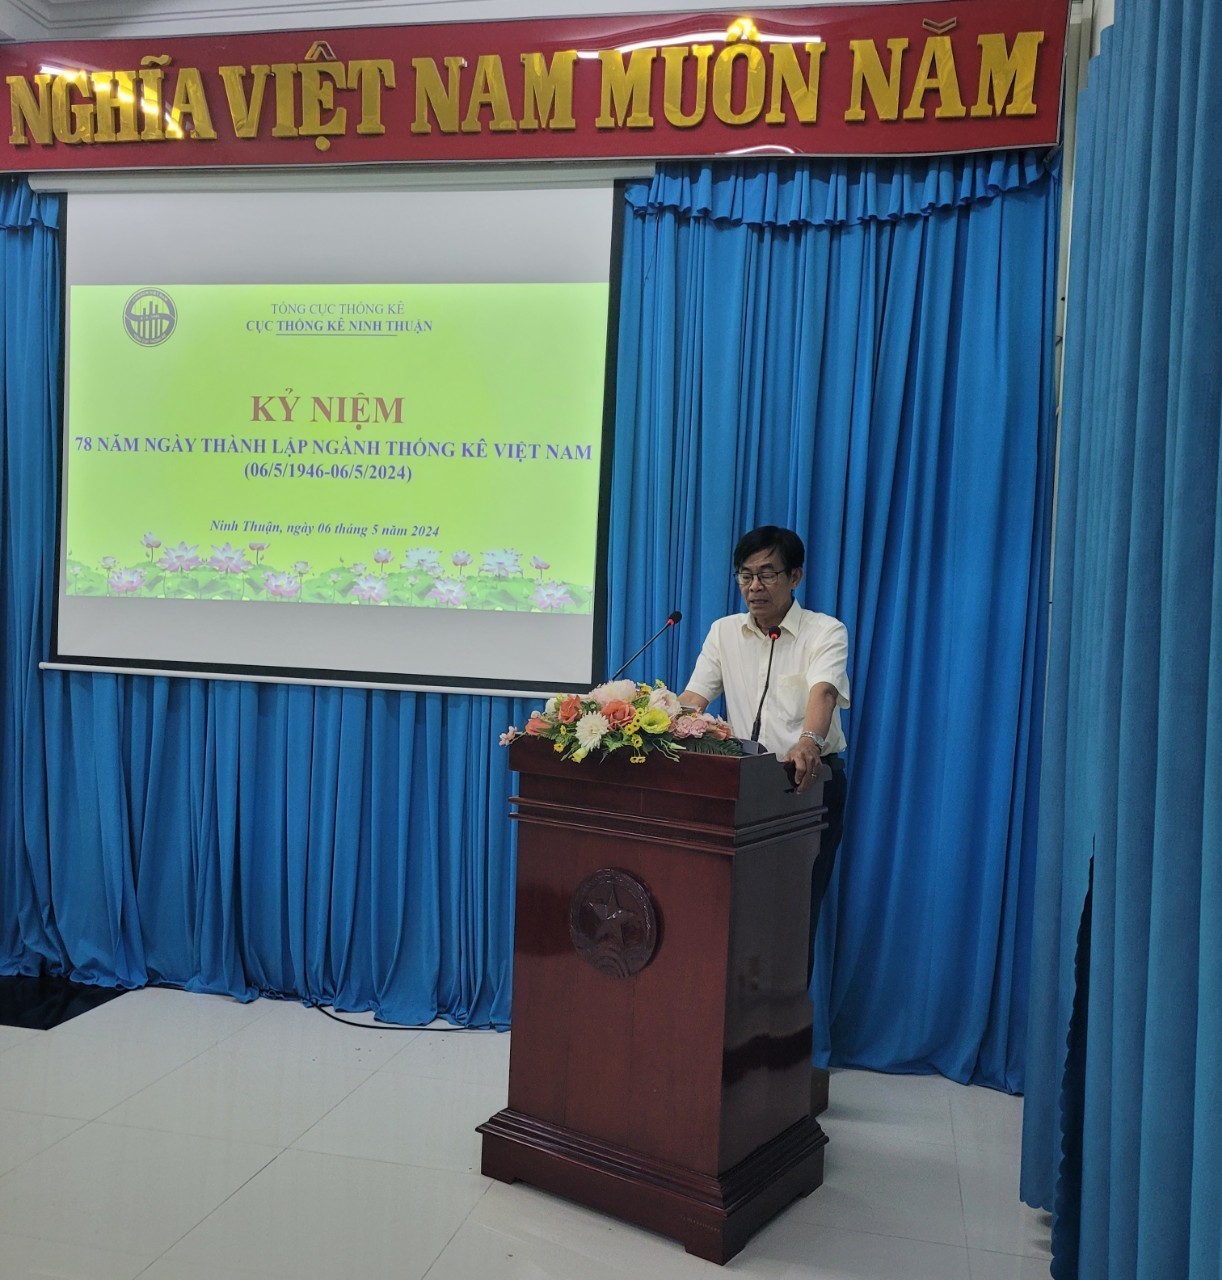 Hội nghị tọa đàm kỷ niệm 78 năm Ngày thành lập ngành Thống kê Việt nam (06/5/1946 – 06/5/2024)